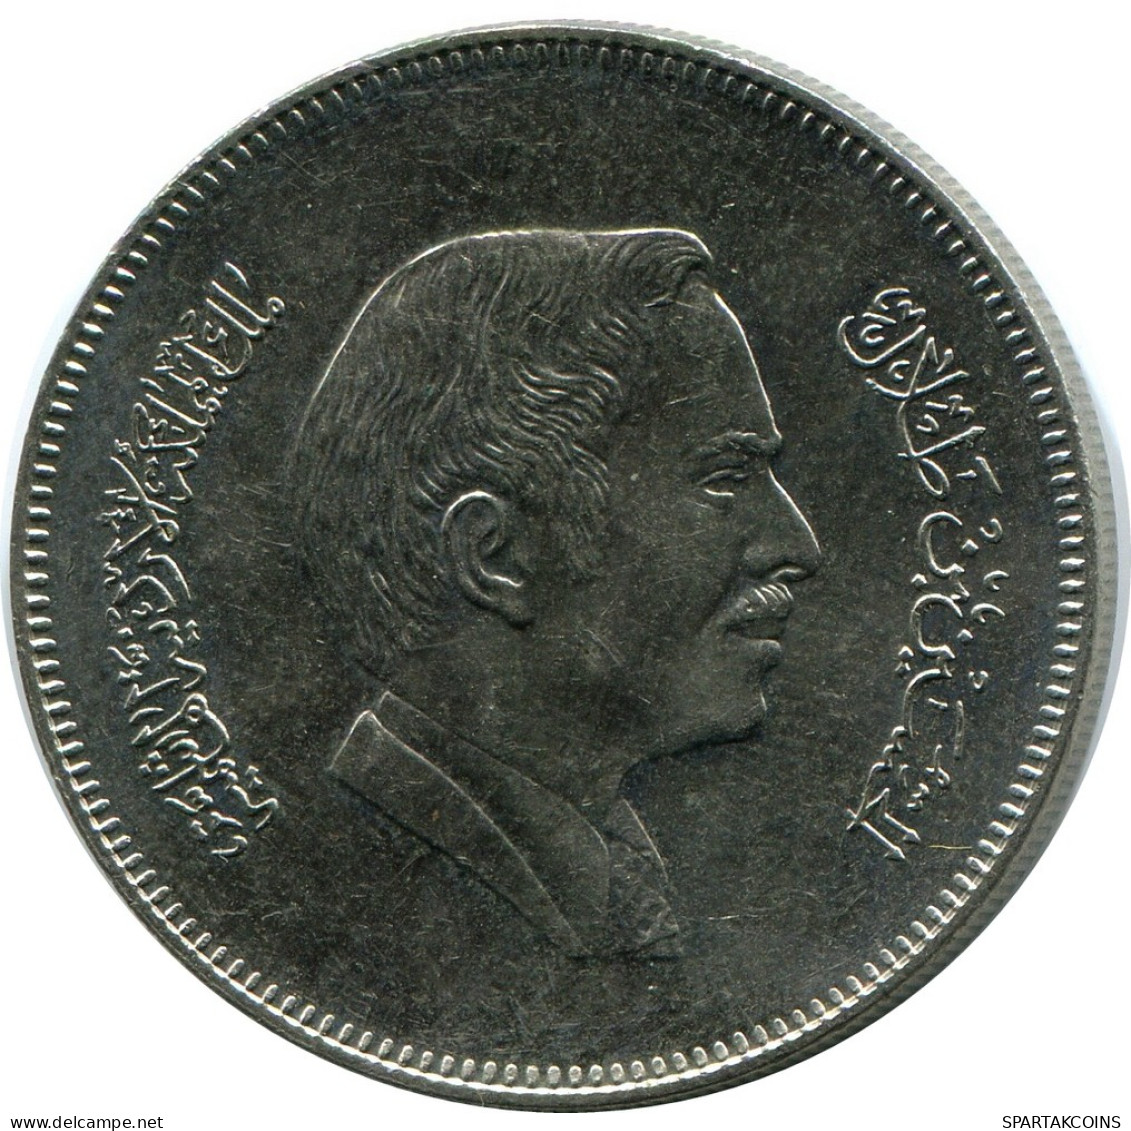 ½ DIRHAM / 50 FILS 1991 JORDAN Coin #AP078.U - Jordan